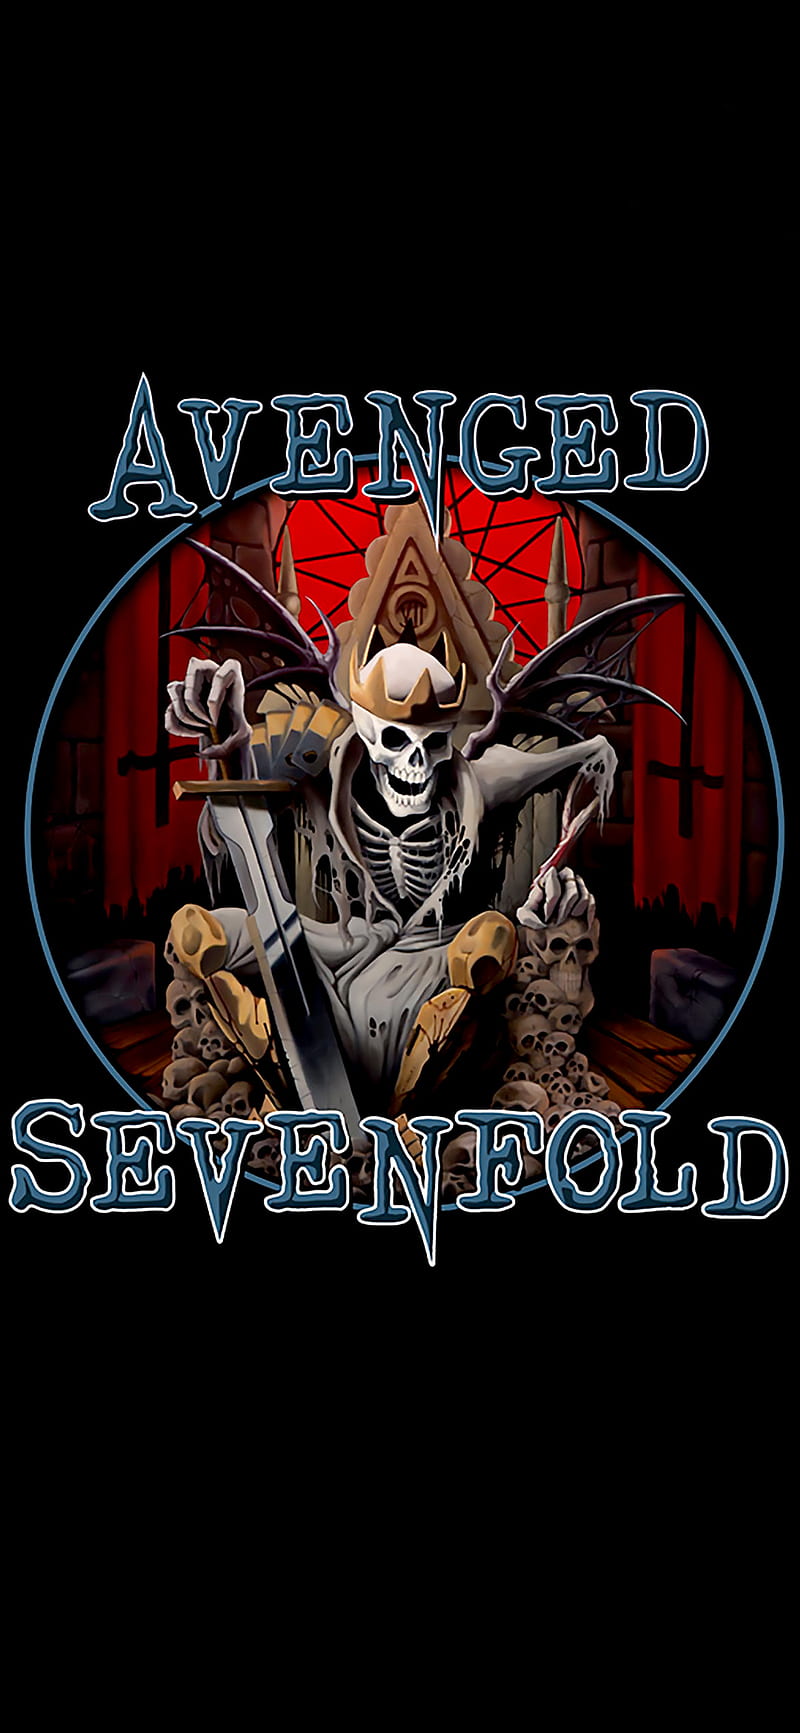 Avenged Sevenfold, album art, album cover, mobile background, HD phone  wallpaper | Peakpx